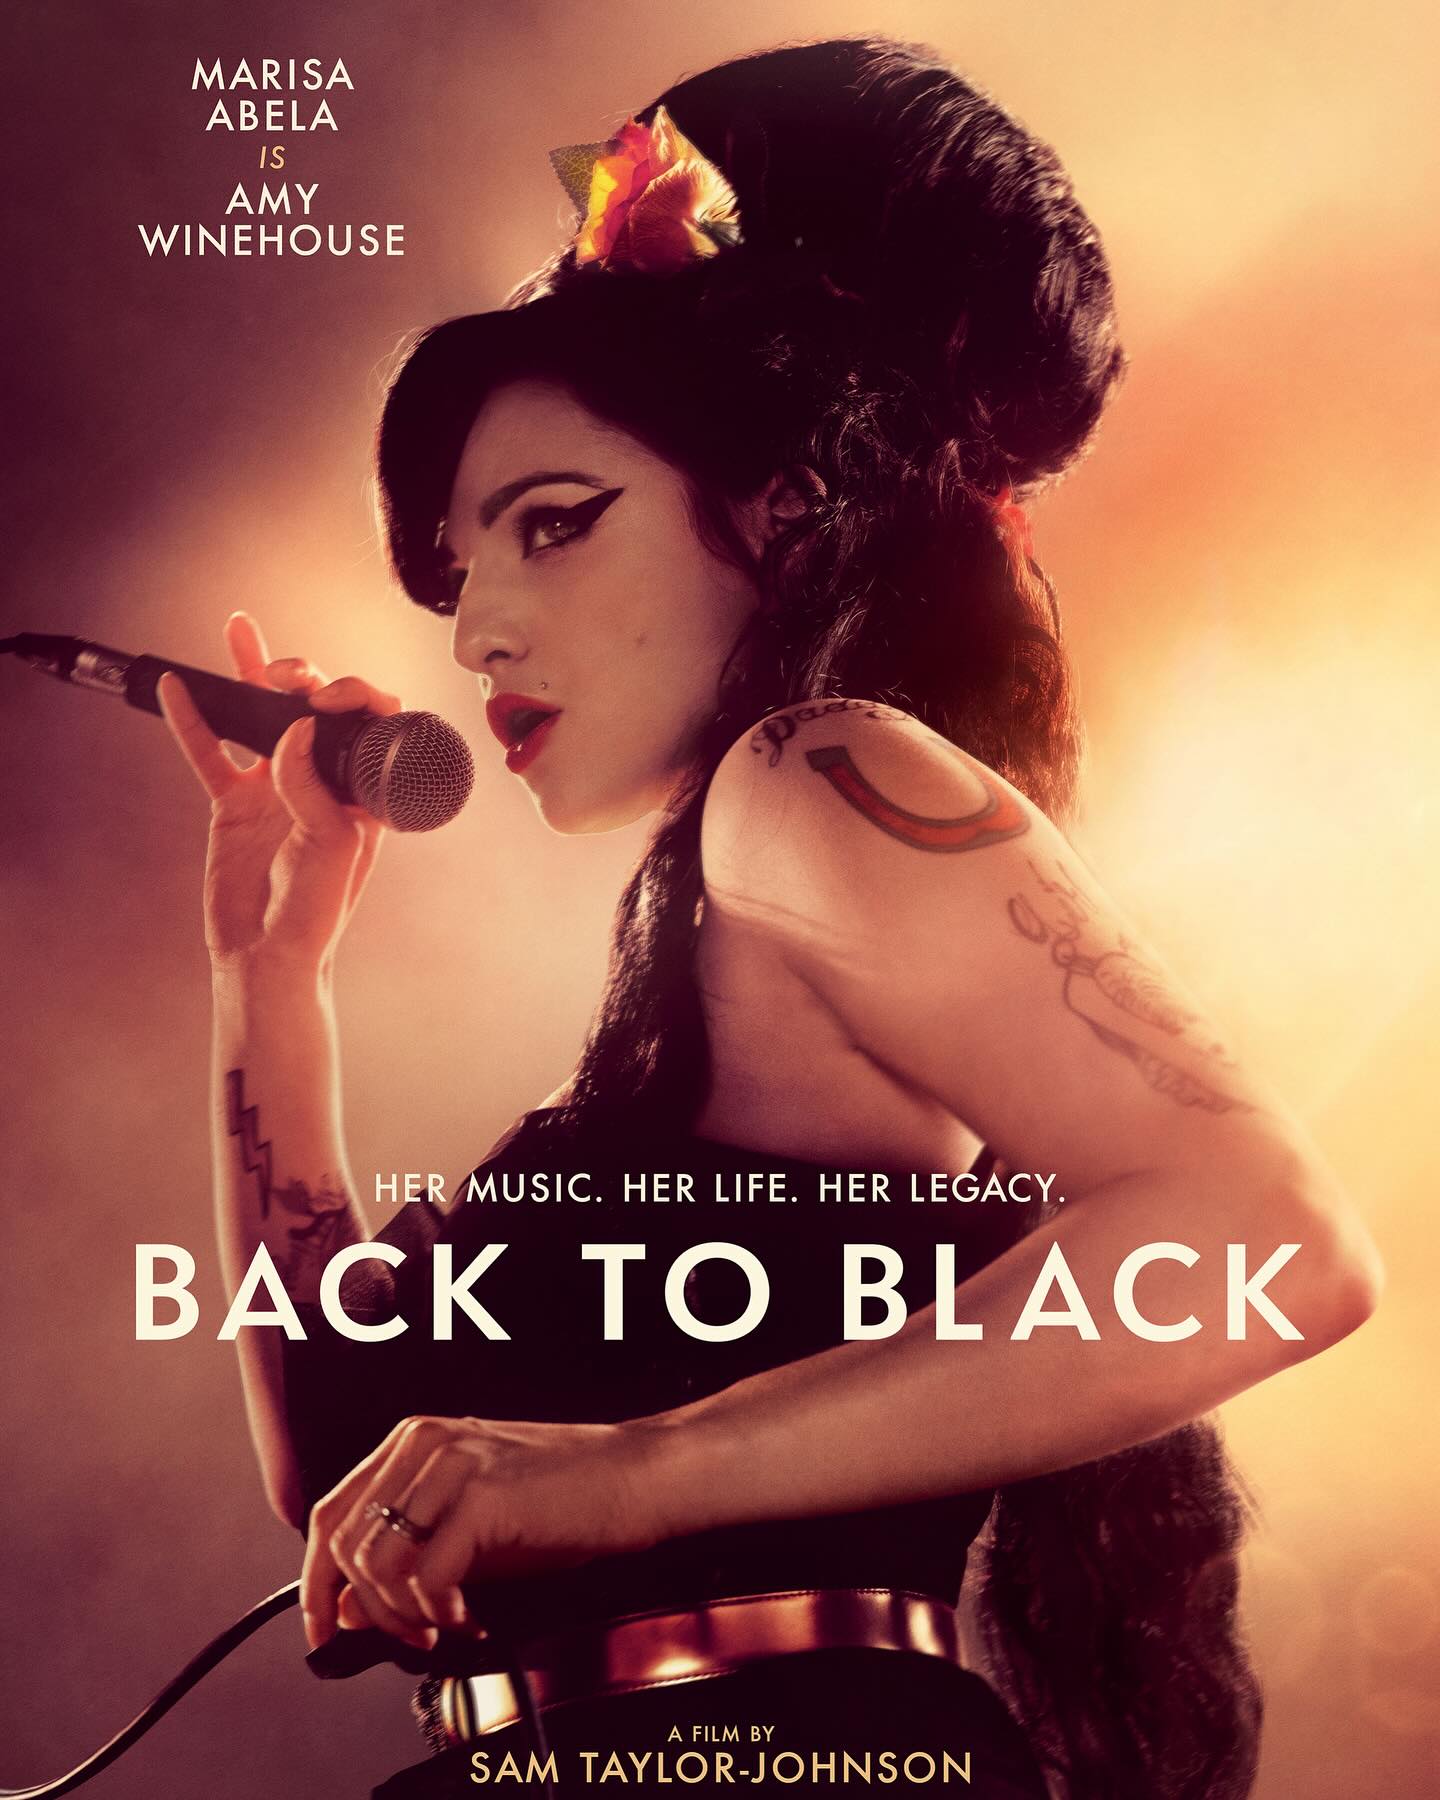 Δες το trailer της βιογραφίας της Amy Winehouse με πρωταγωνίστρια τη Marisa Abela